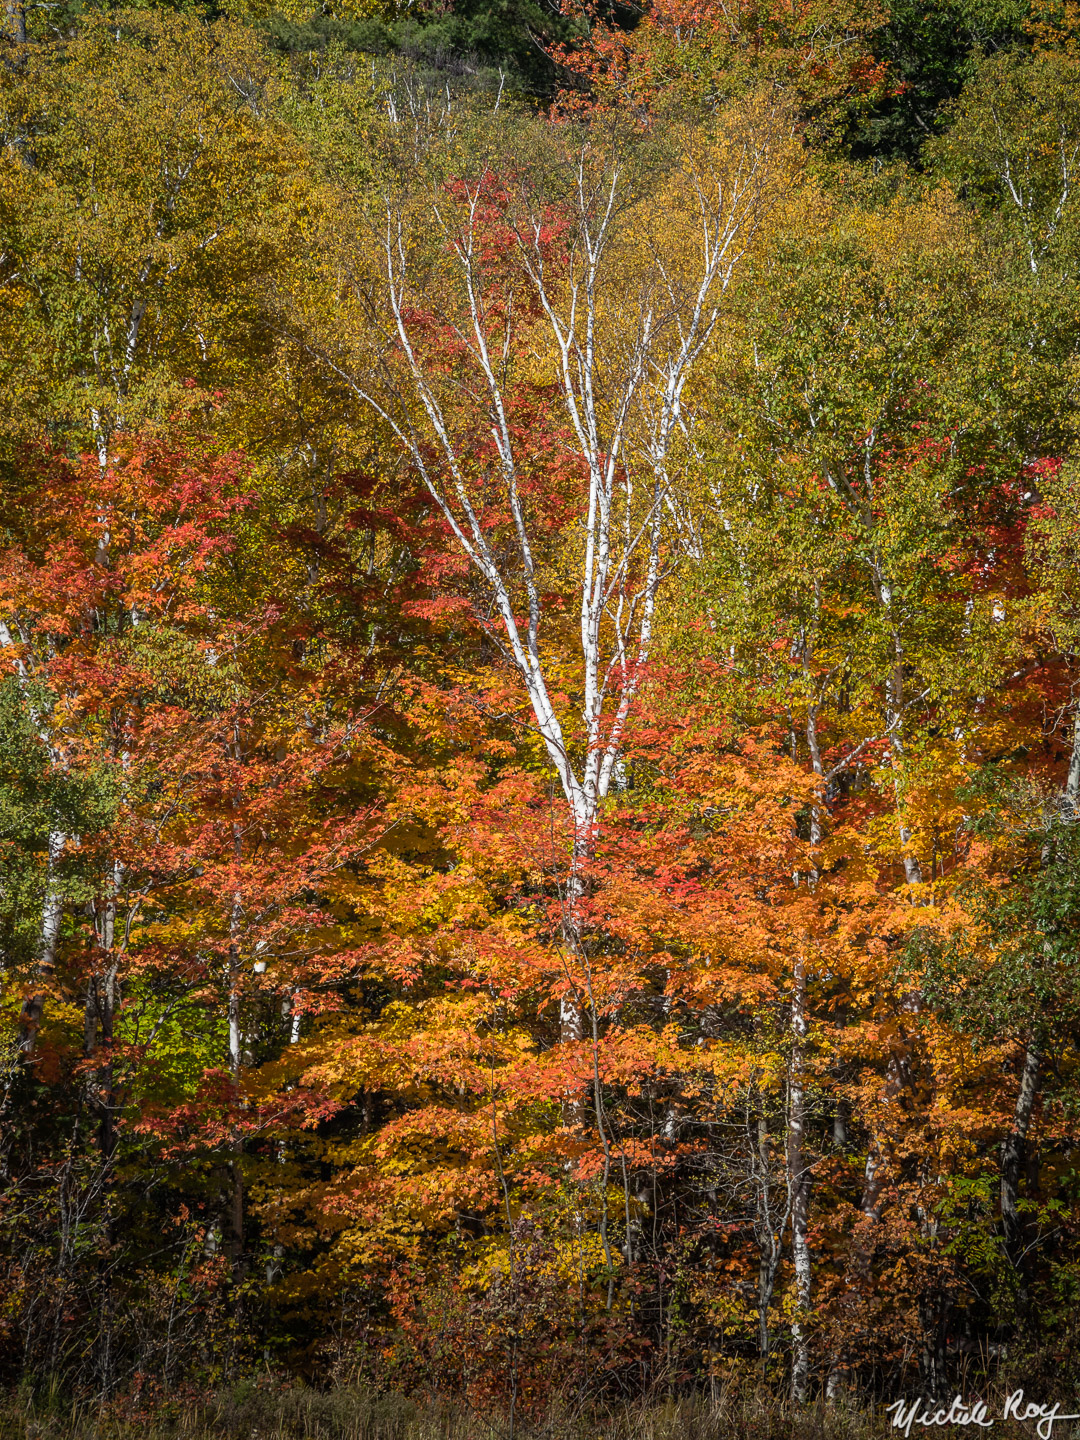 Couleurs d’automne (5) / Fall colors (5)